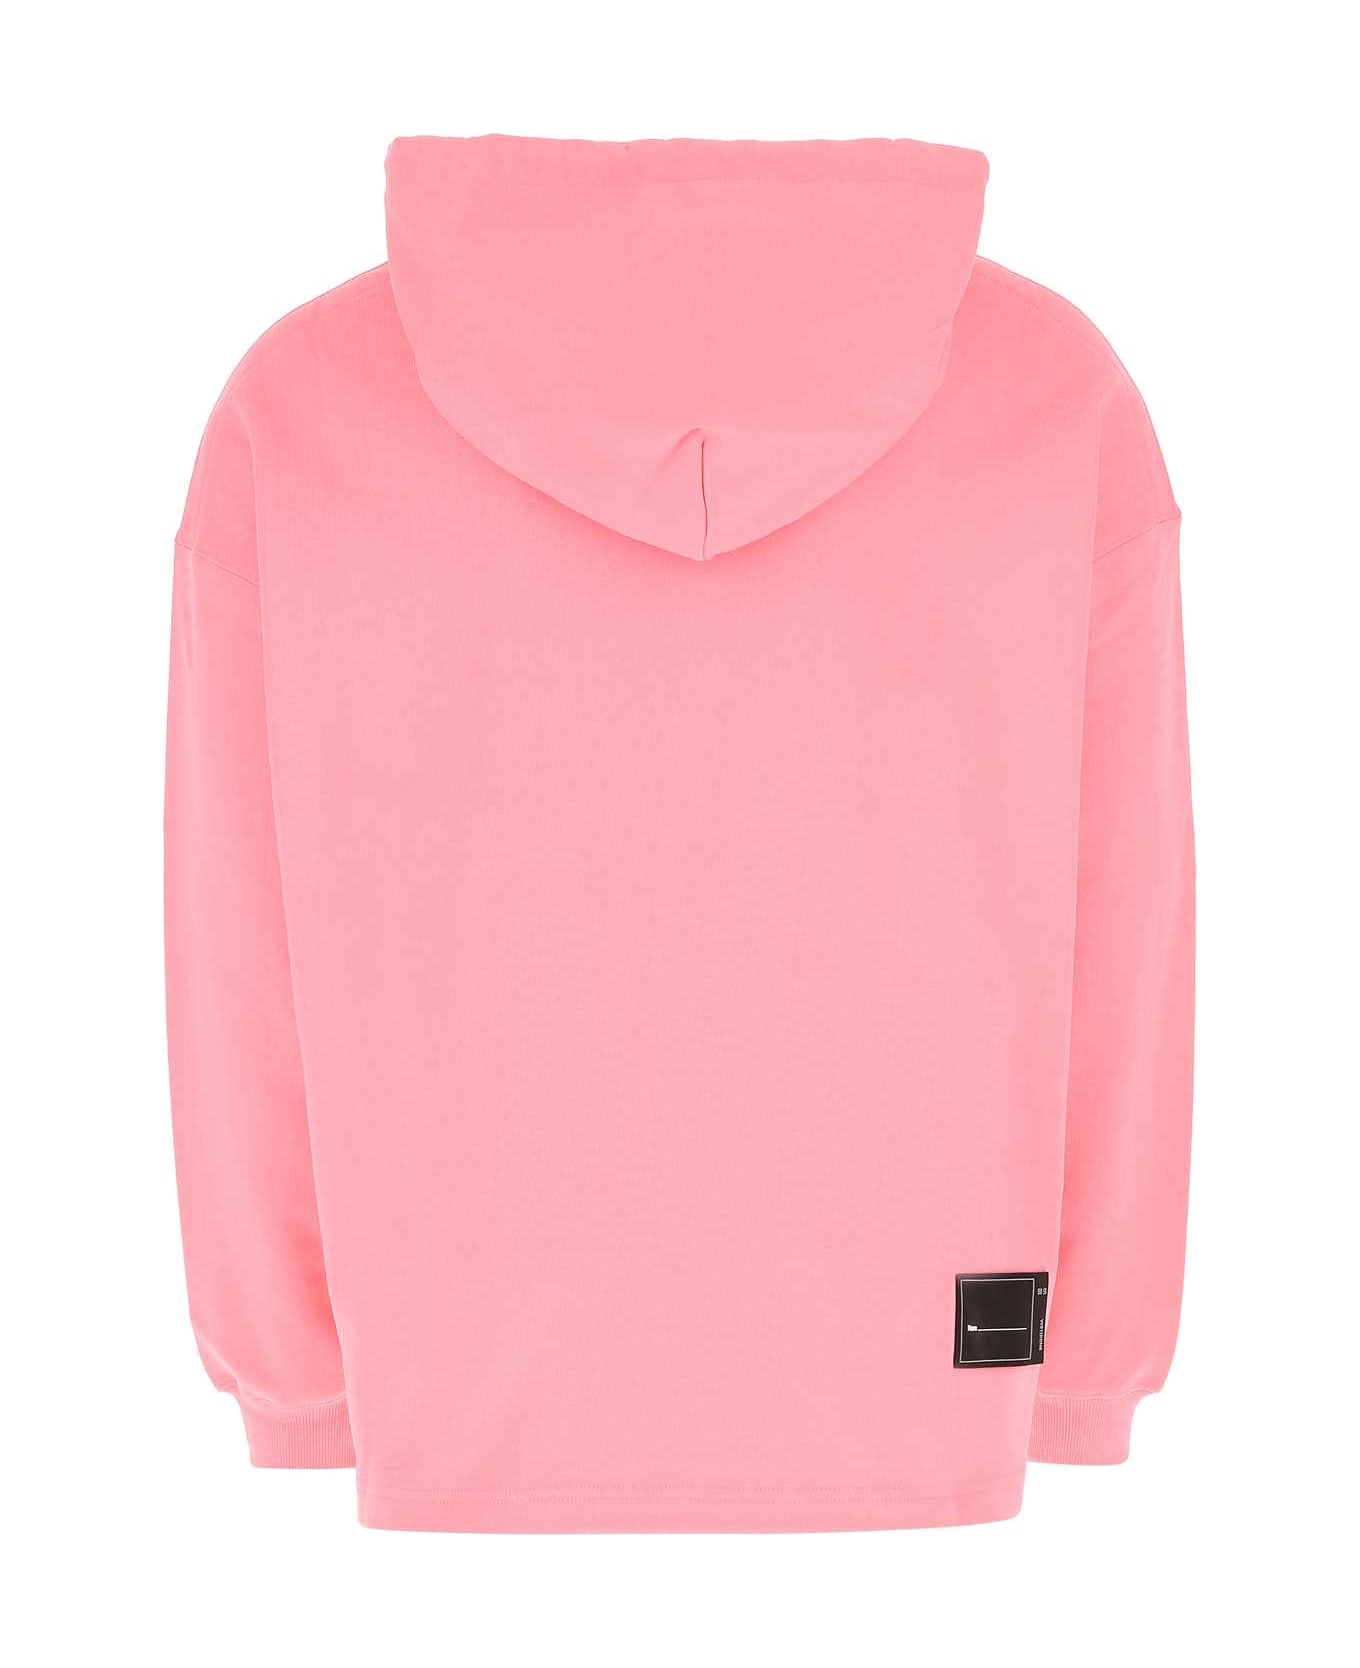 WE11 DONE Pink Cotton Sweatshirt - PINK フリース